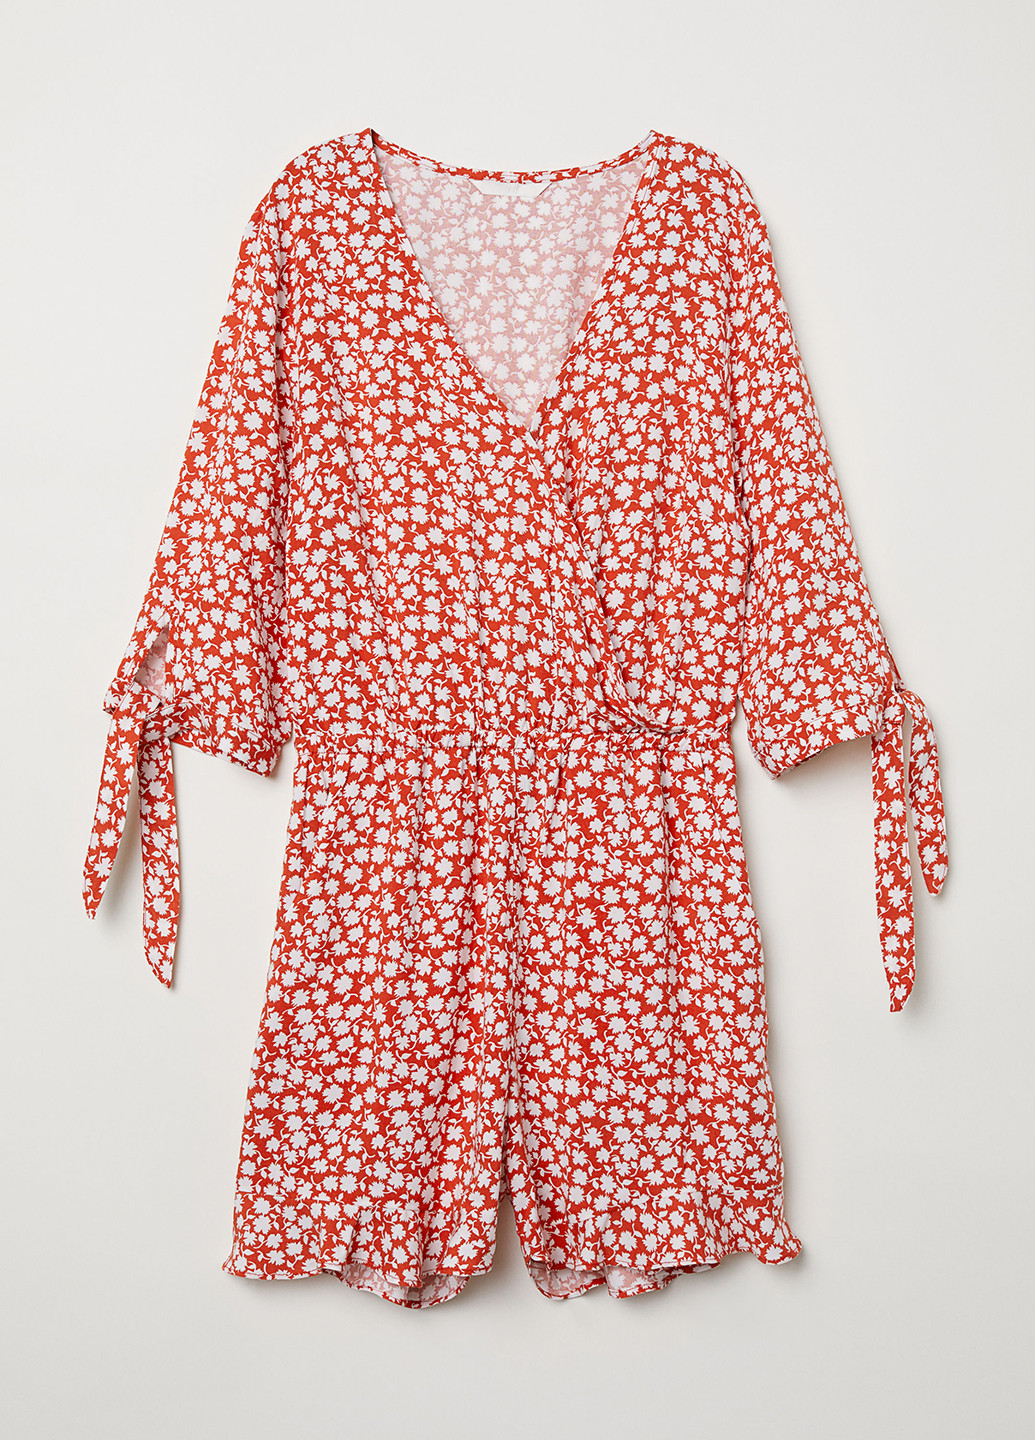 Комбинезон H&M комбинезон-шорты цветочный красный кэжуал вискоза